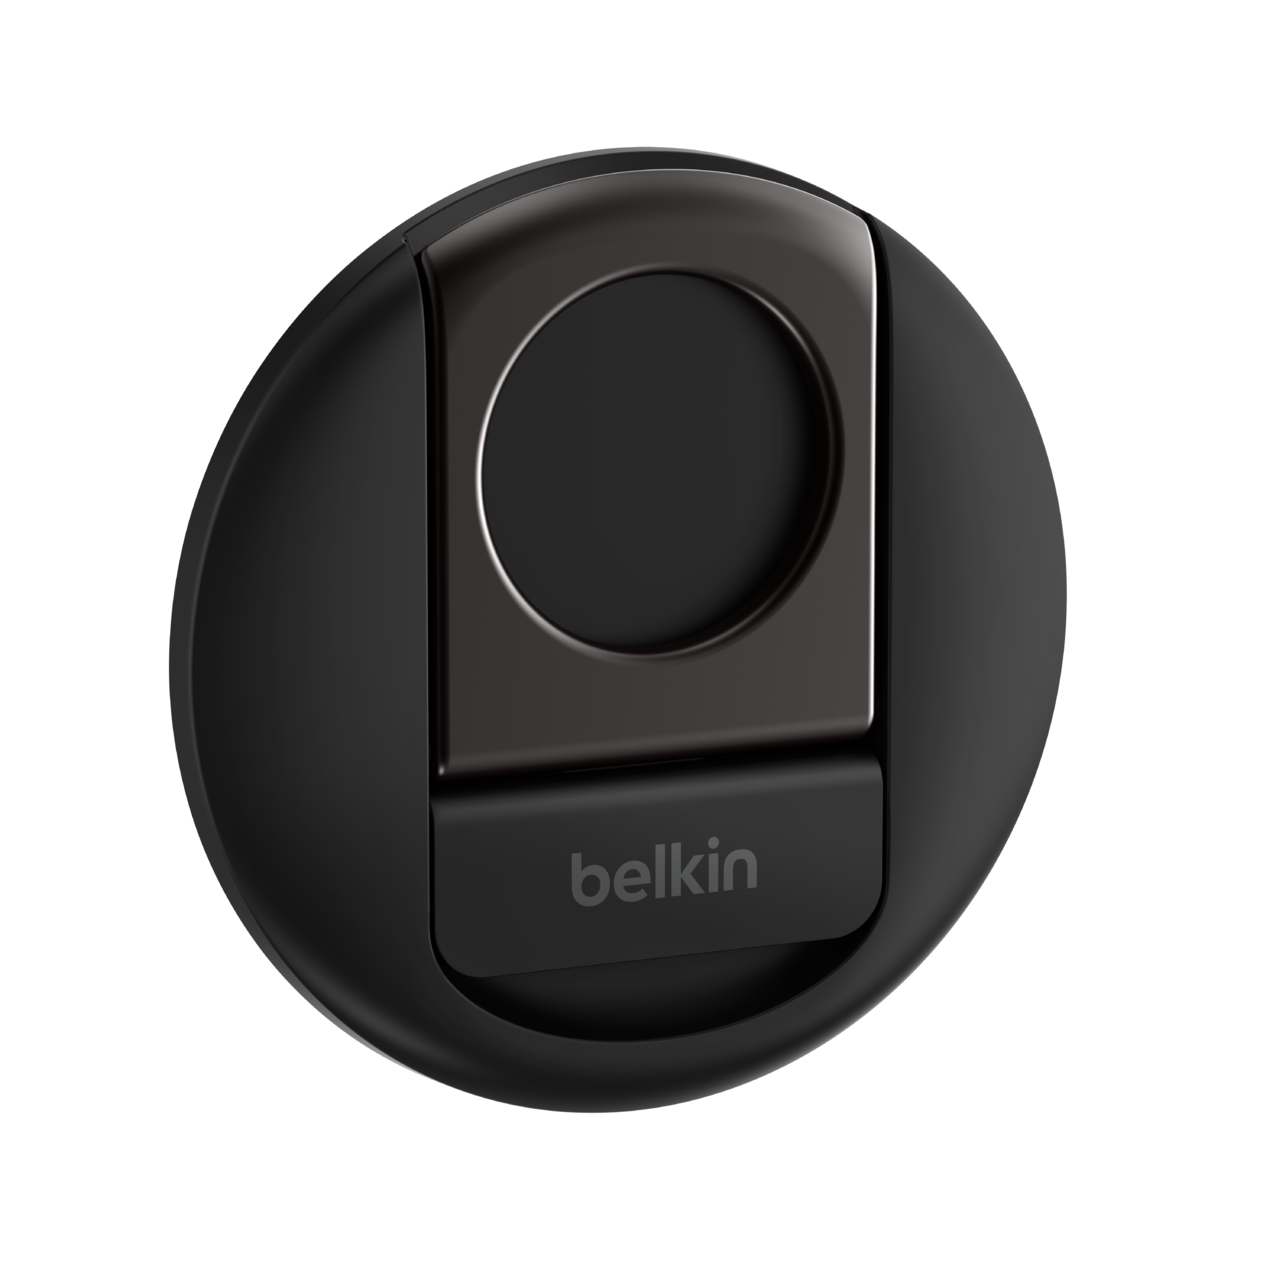 Belkin MMA006btBK Support actif Mobile/smartphone Noir Belkin